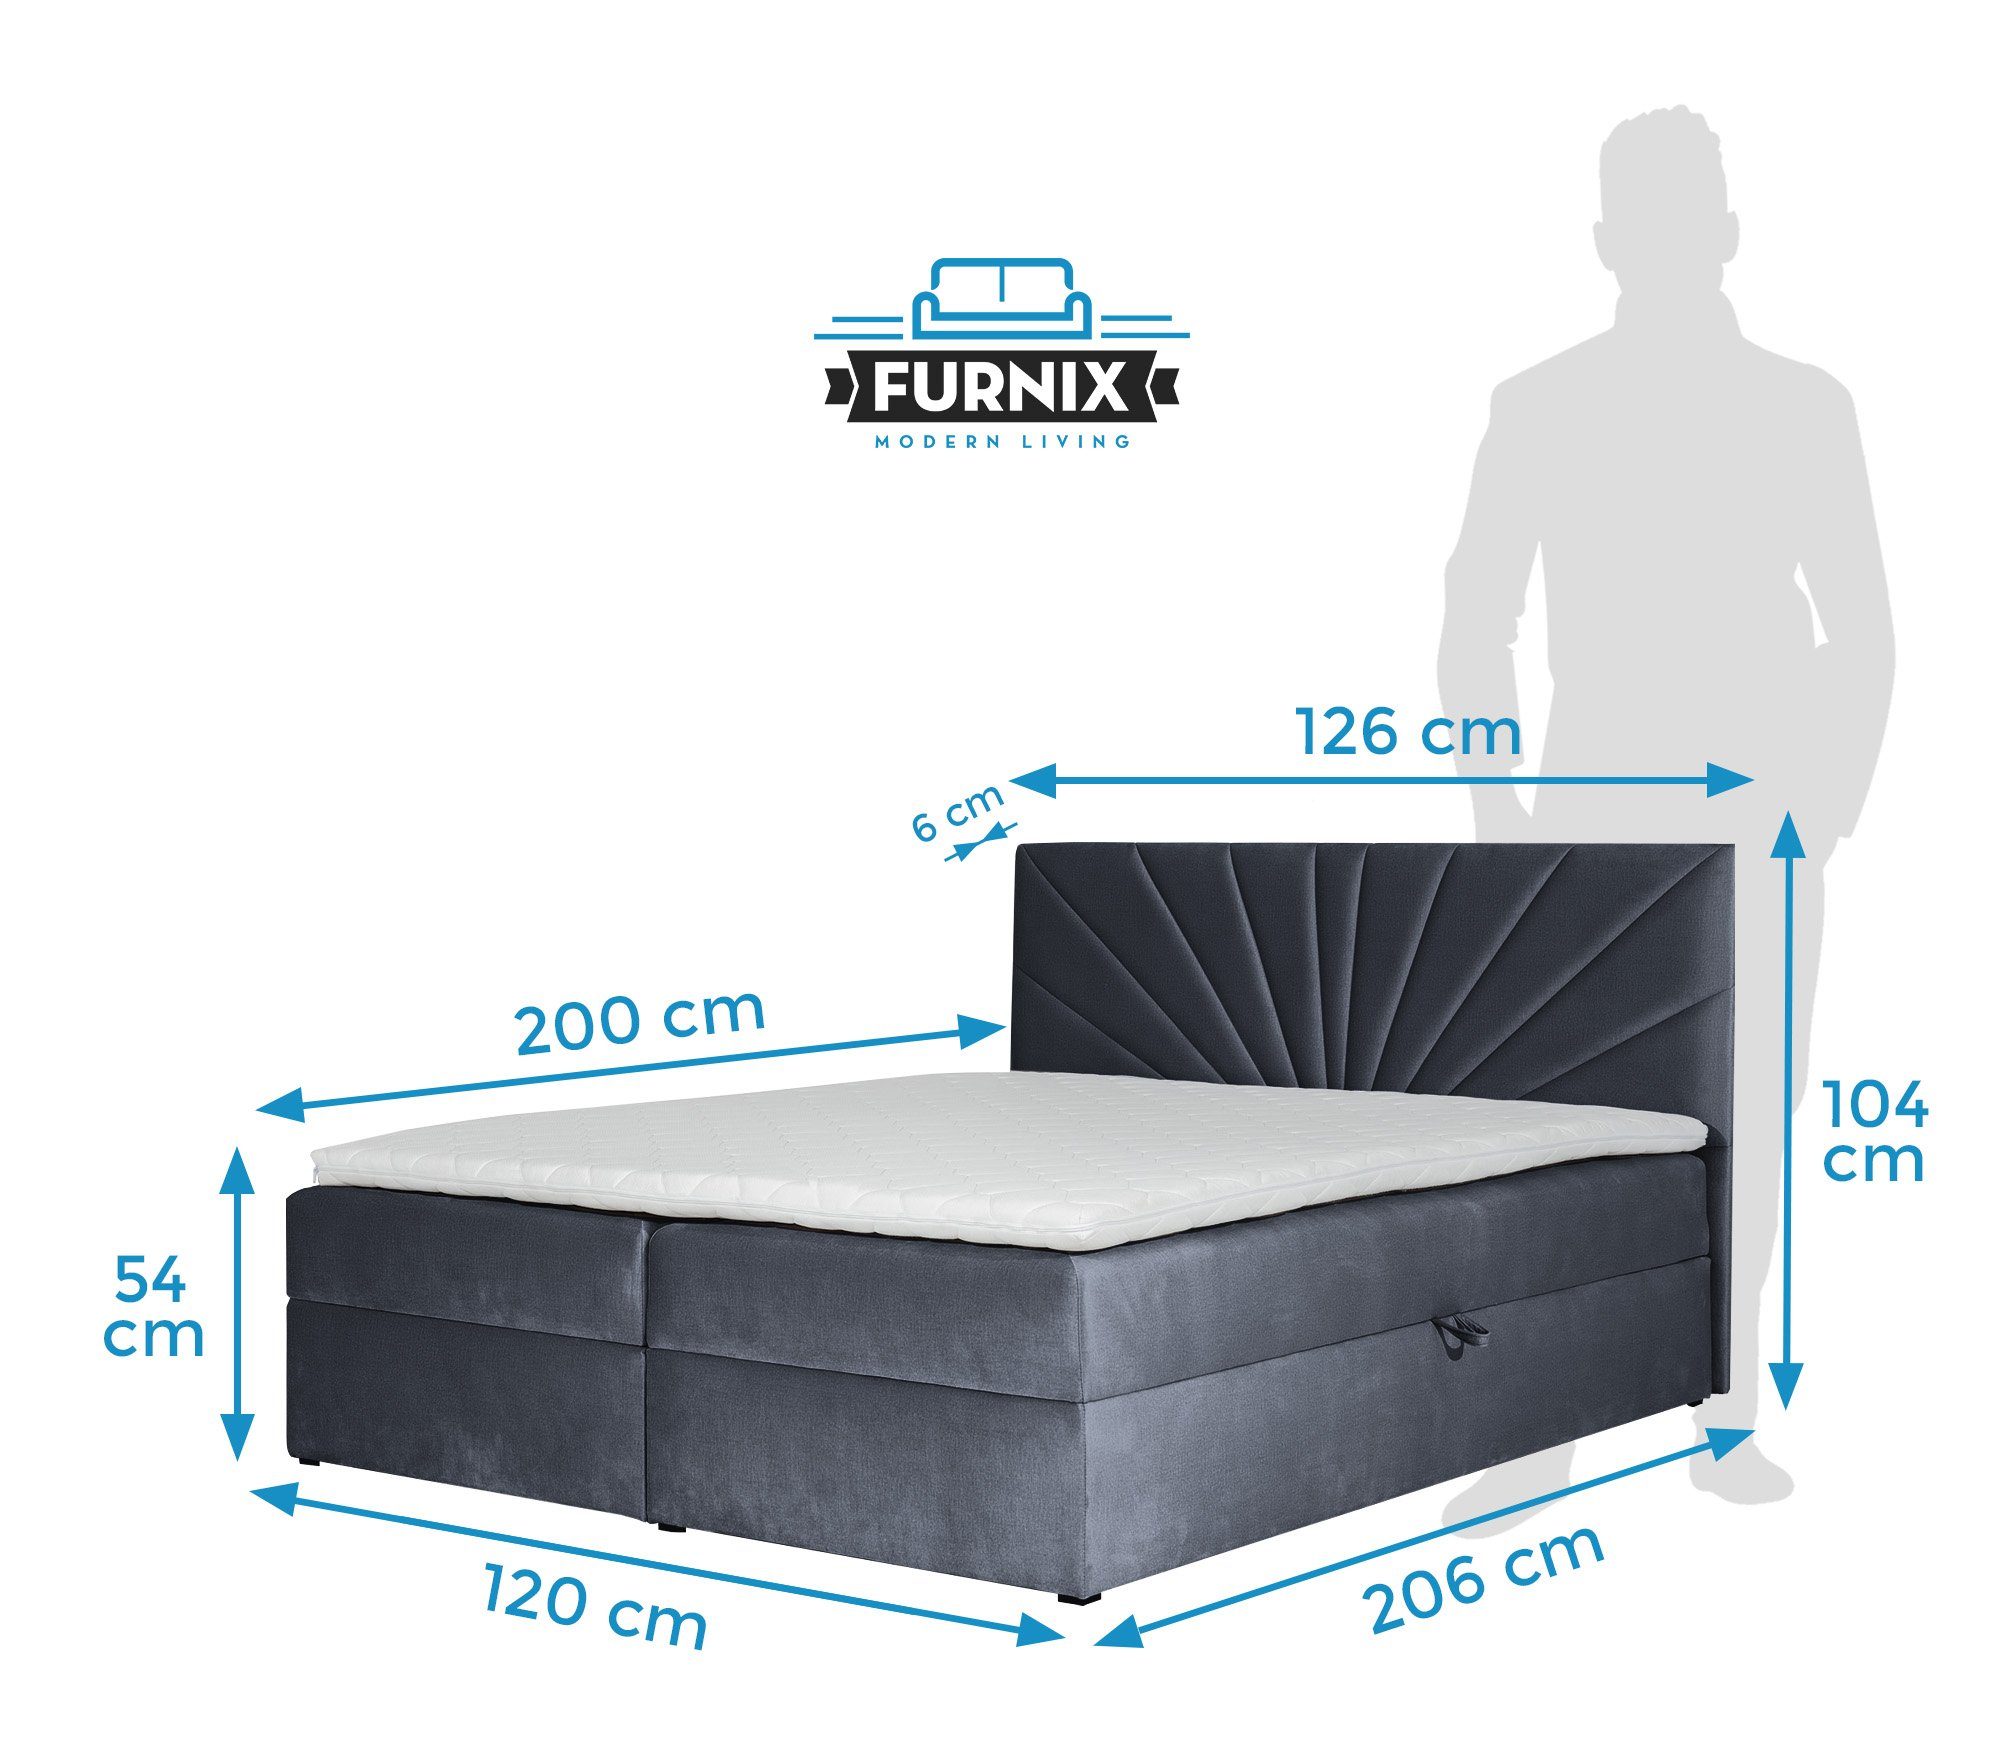 Furnix Boxspringbett TREZO Grau hochwertige 4 tiefen 120/140/160/180/200x200 Bettkasten mit und cm Polsterstoffe Topper